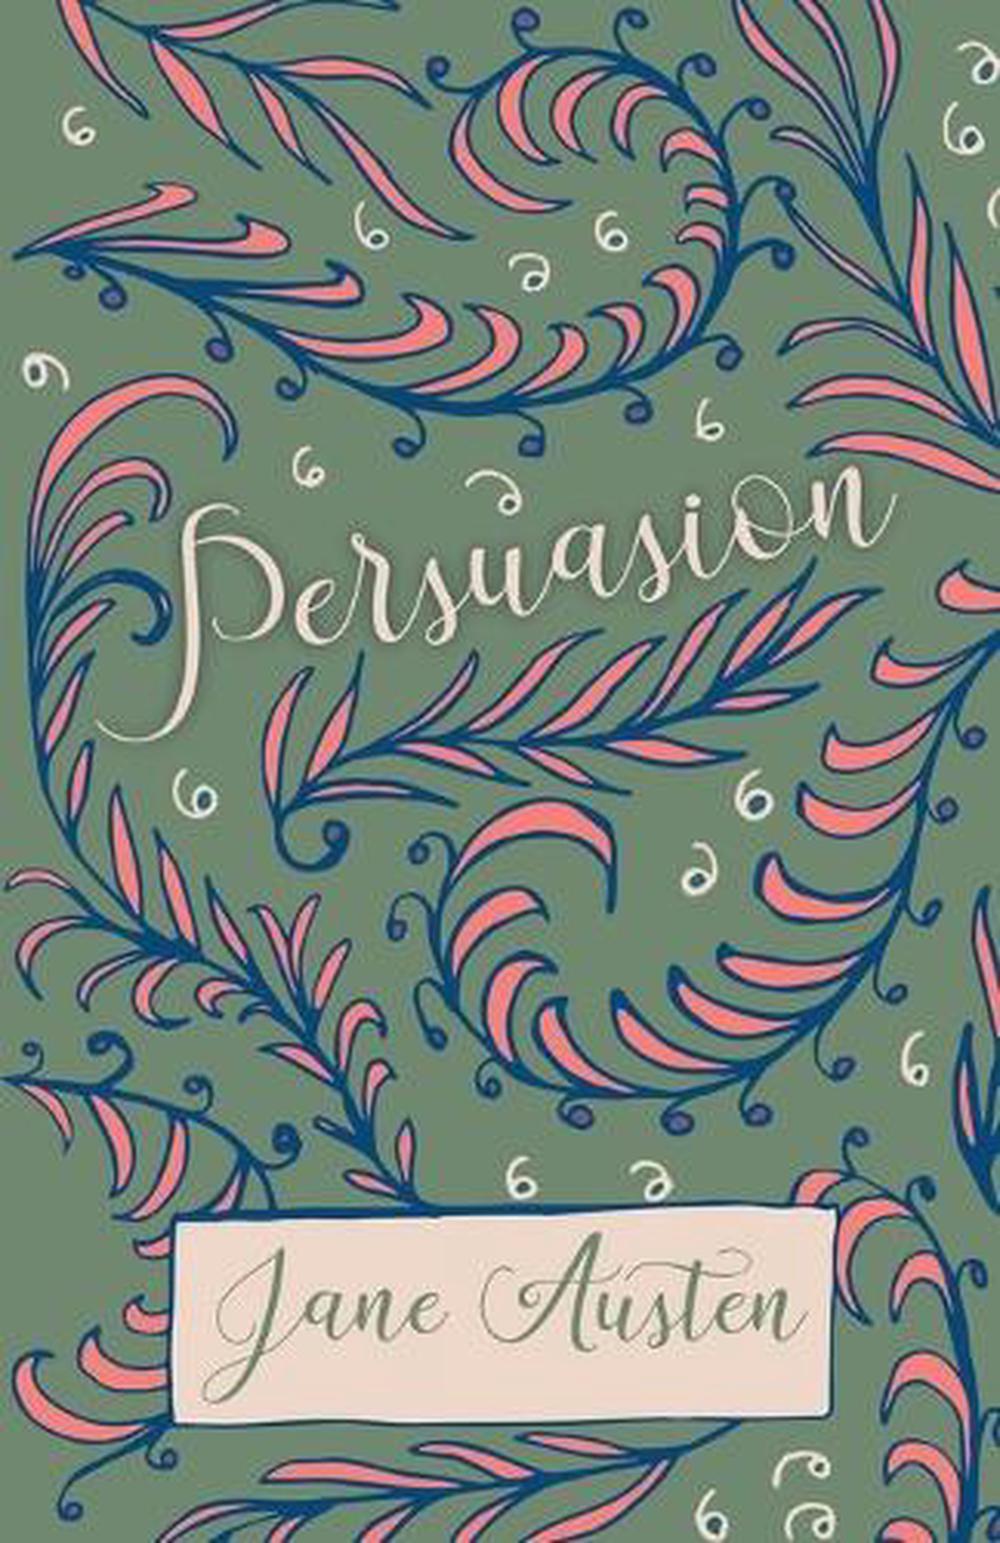 recipe for persuasion a novel